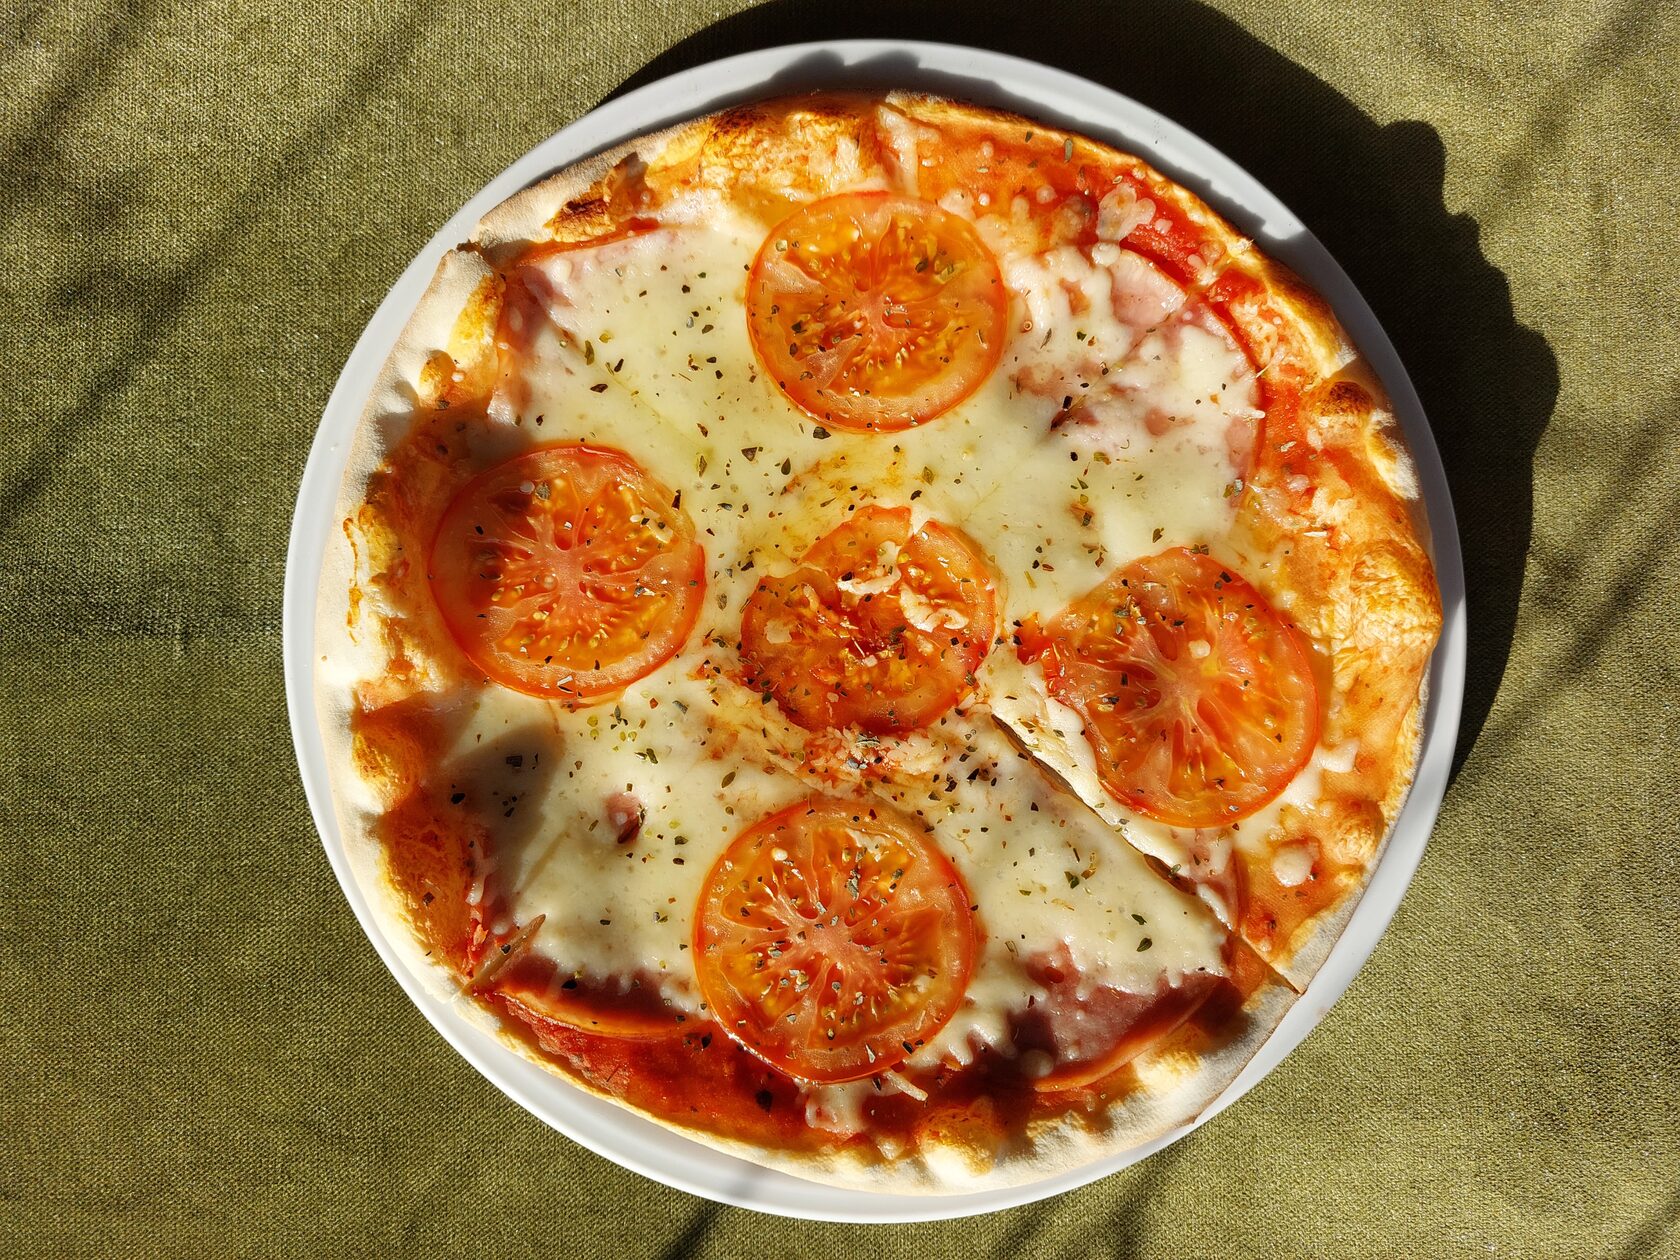 томаты для соуса в пиццу фото 94